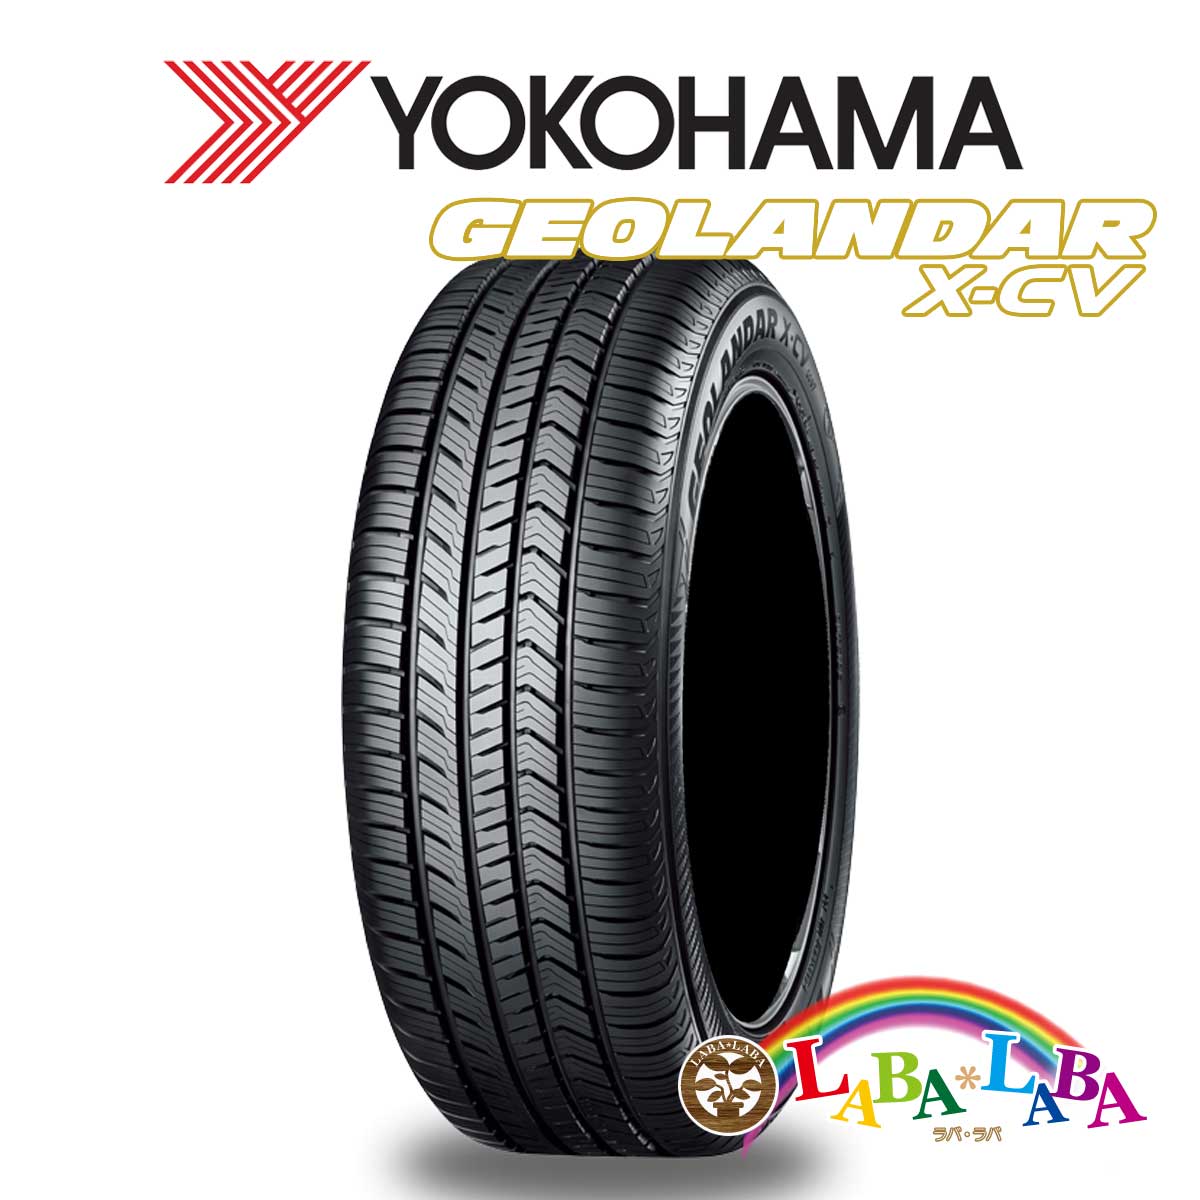 ２本以上送料無料 国産タイヤ サマータイヤ 新品 タイヤのみ YOKOHAMA ヨコハマ GEOLANDAR X-CV 255 109W XL G057 限定製作 4WD 女性に人気！ SUV 50R20 ジオランダー